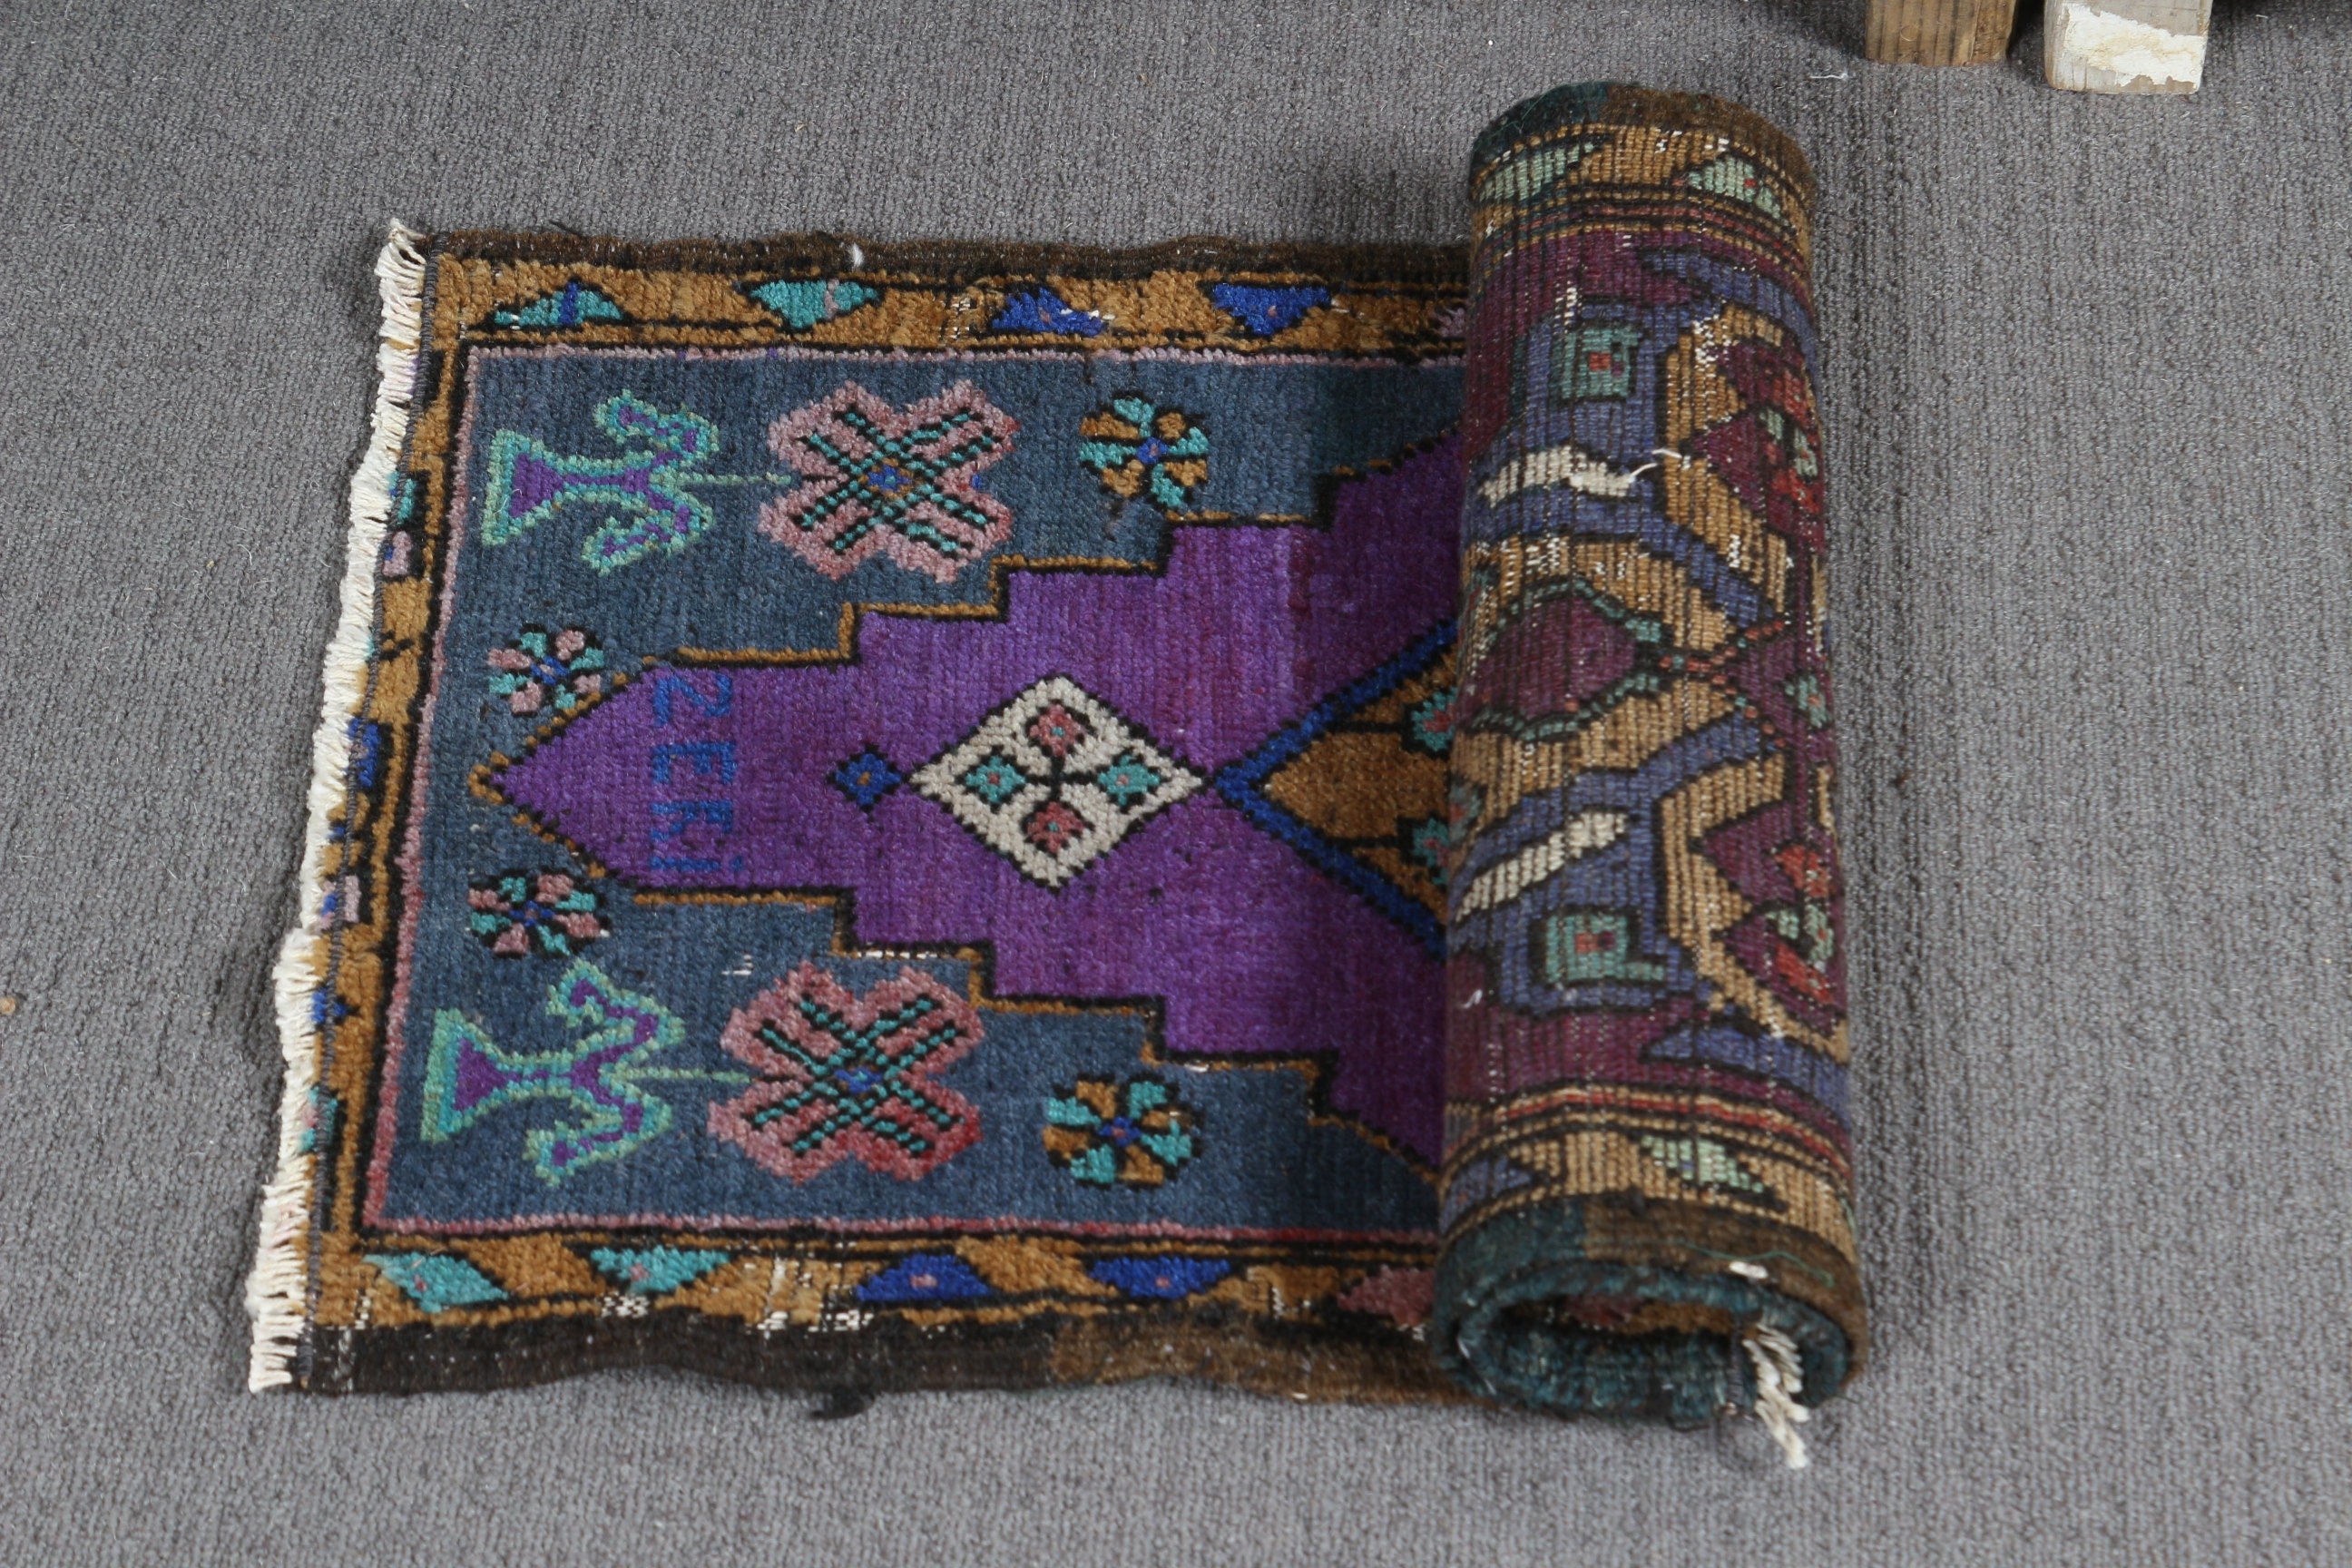 Anatolian Rugs, Rugs for Nursery, Bedroom Rug, Turkish Rugs, Purple Floor Rug, Vintage Rugs, Entry Rug, Door Mat Rug, 1.3x2.6 ft Small Rug